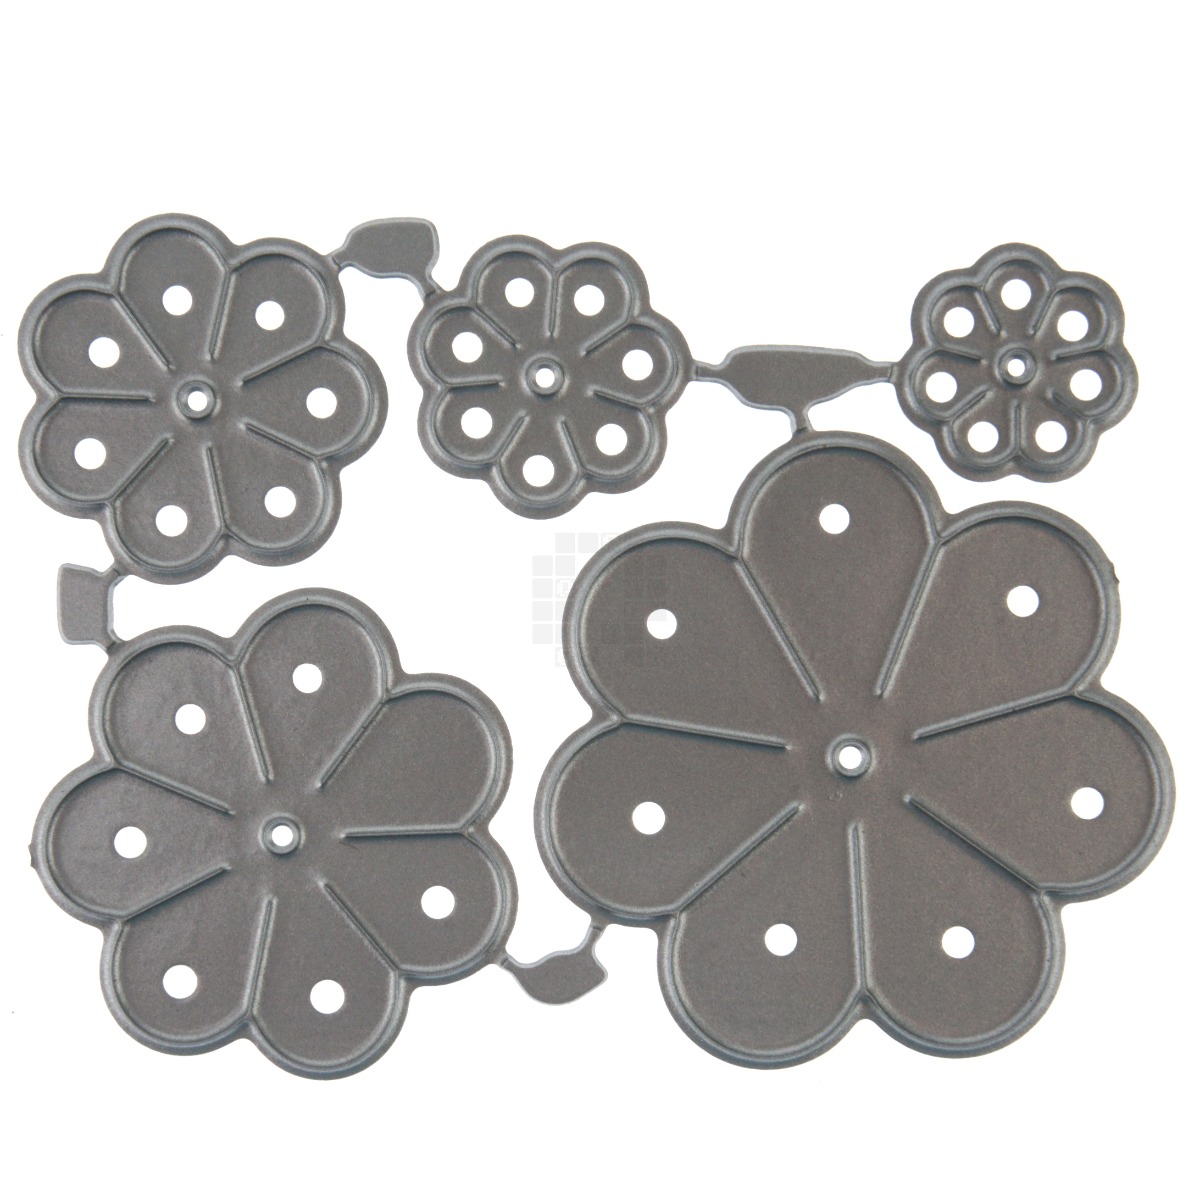 5 Piece Flower Metal Cutting Die Set